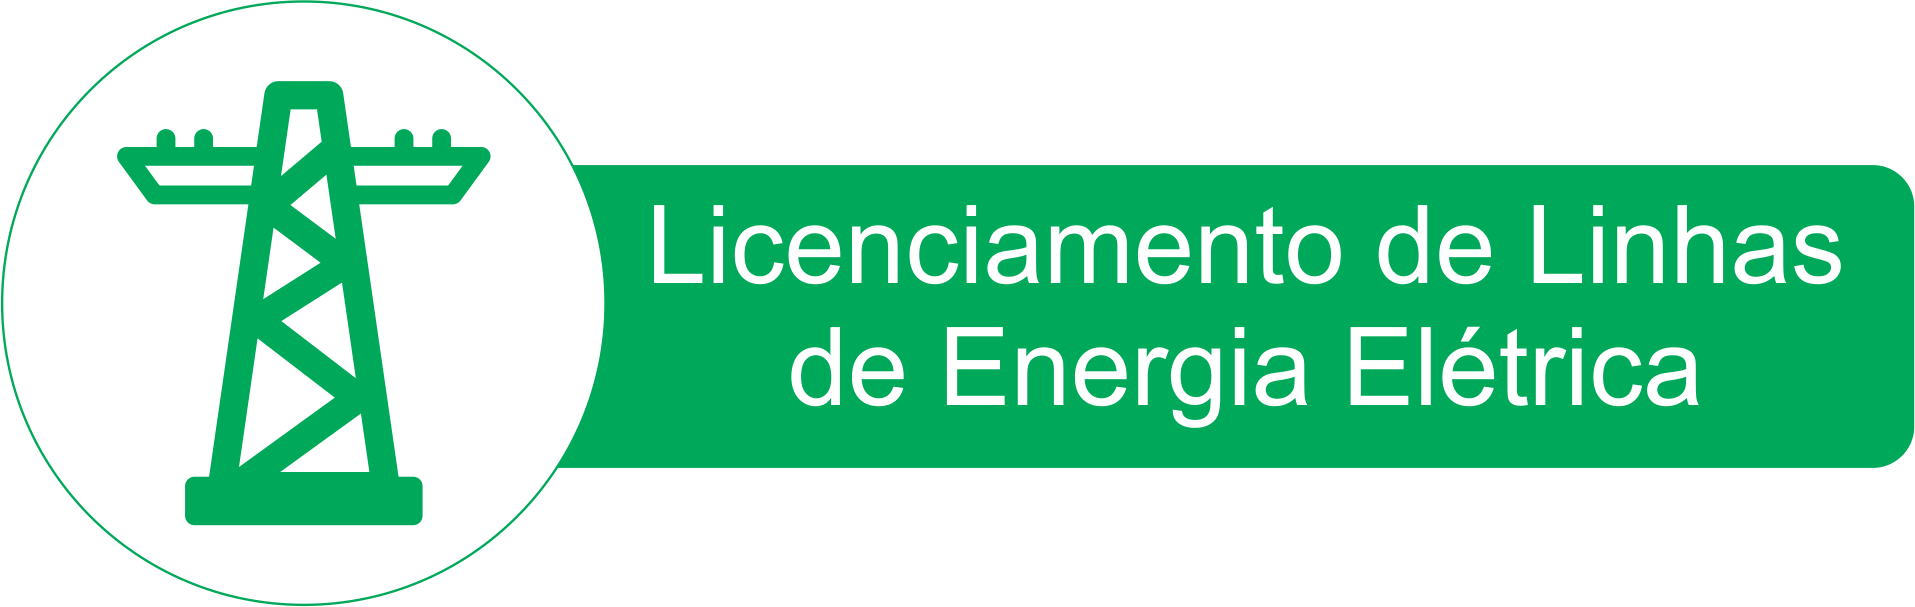 Licenciamento de Linhas de Energia elétrica